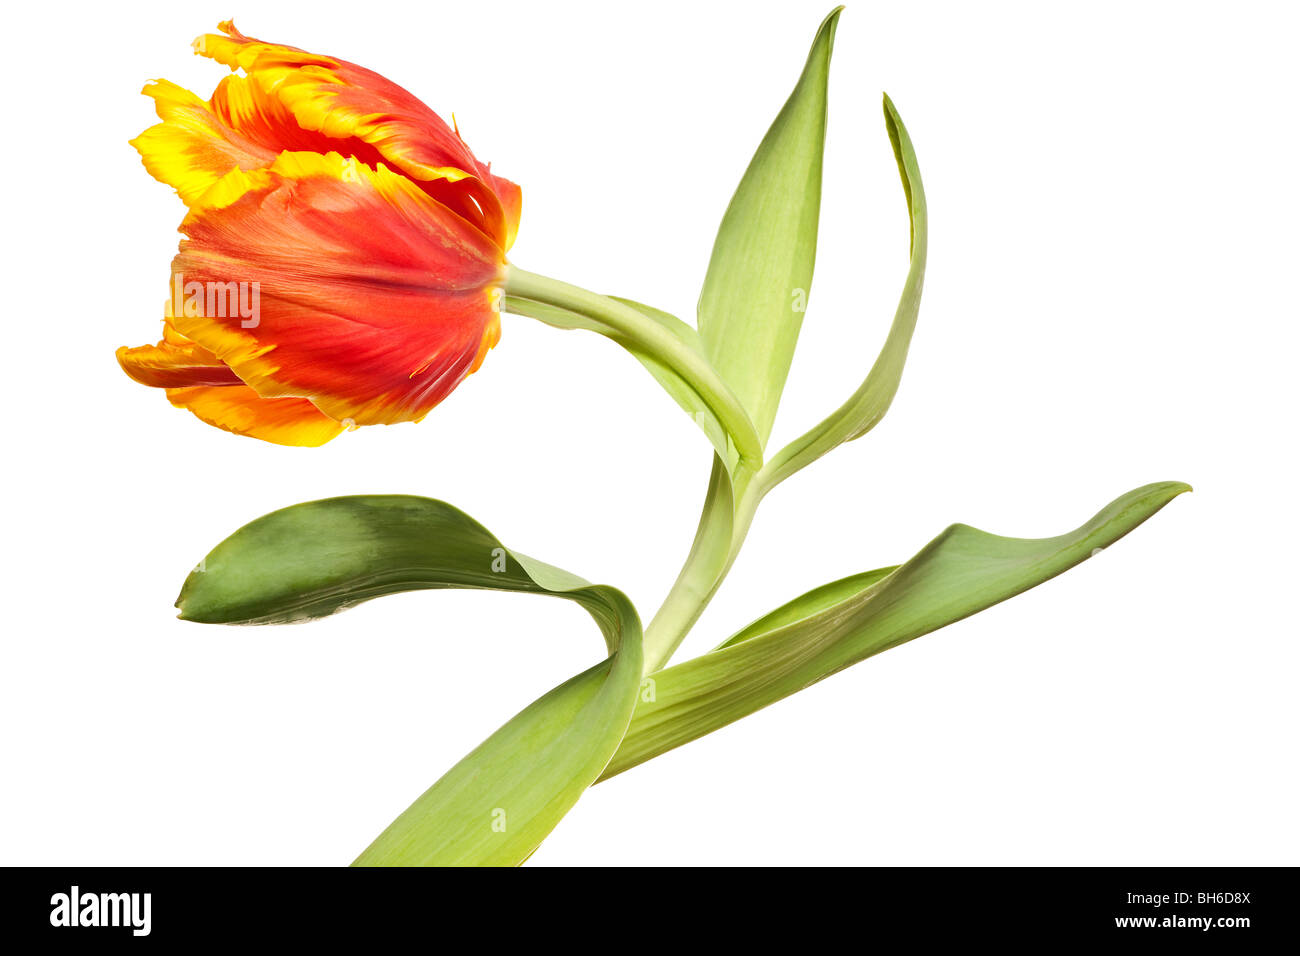 Printemps tulipes fleur isolé sur fond blanc Banque D'Images